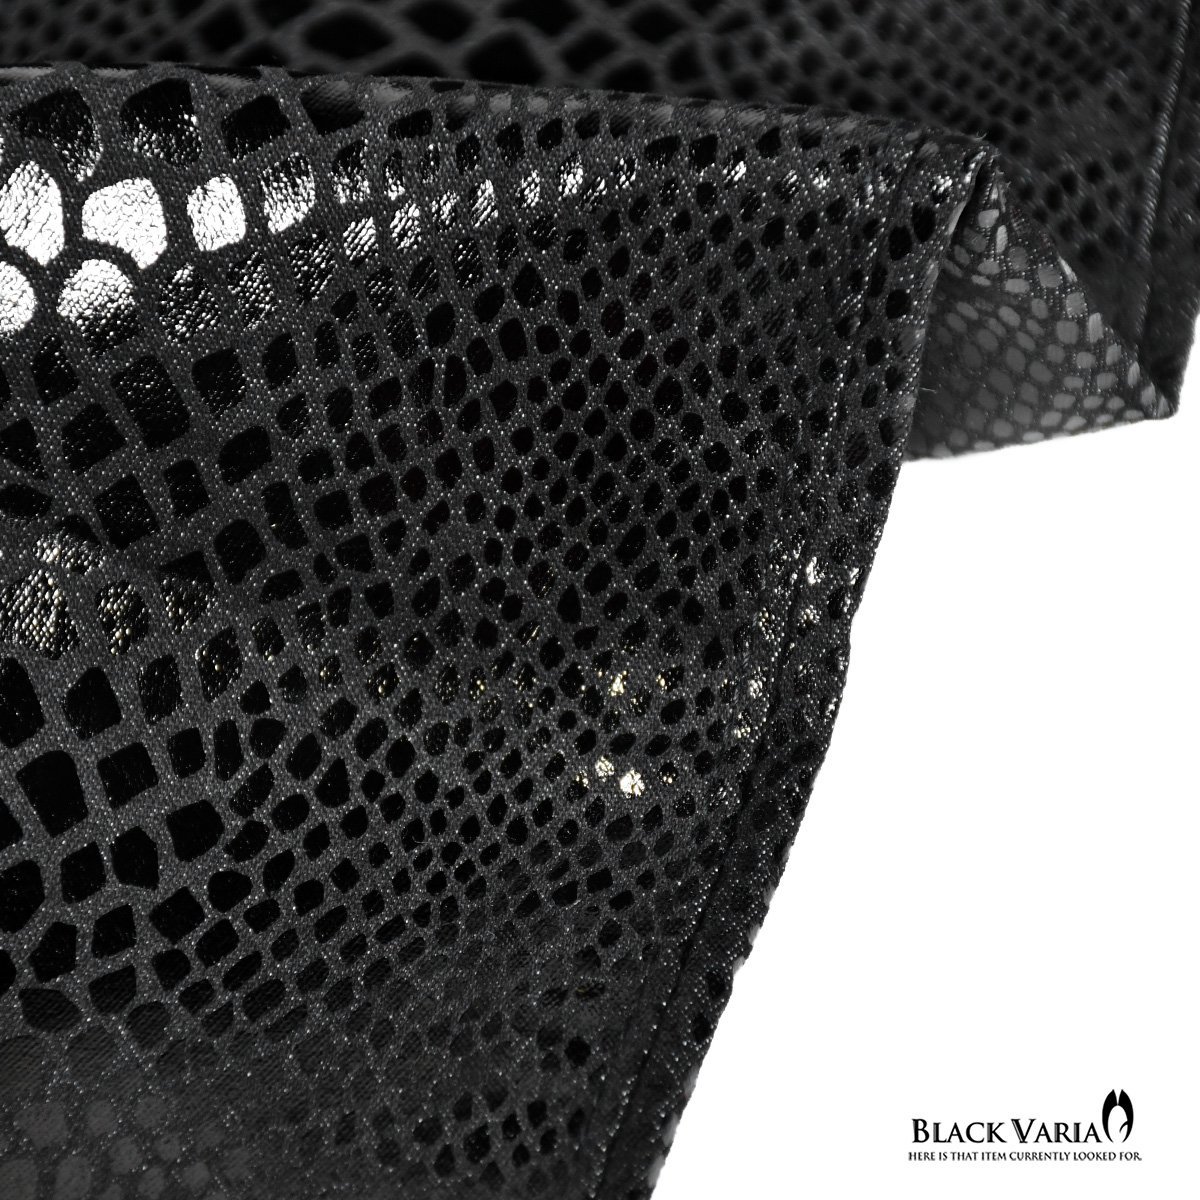 212750-bk BlackVaria ロングパンツ 箔プリント パイソン柄 ヘビ柄 ブーツカット 日本製 ローライズ シューカット メンズ(ブラック黒) M30_画像4